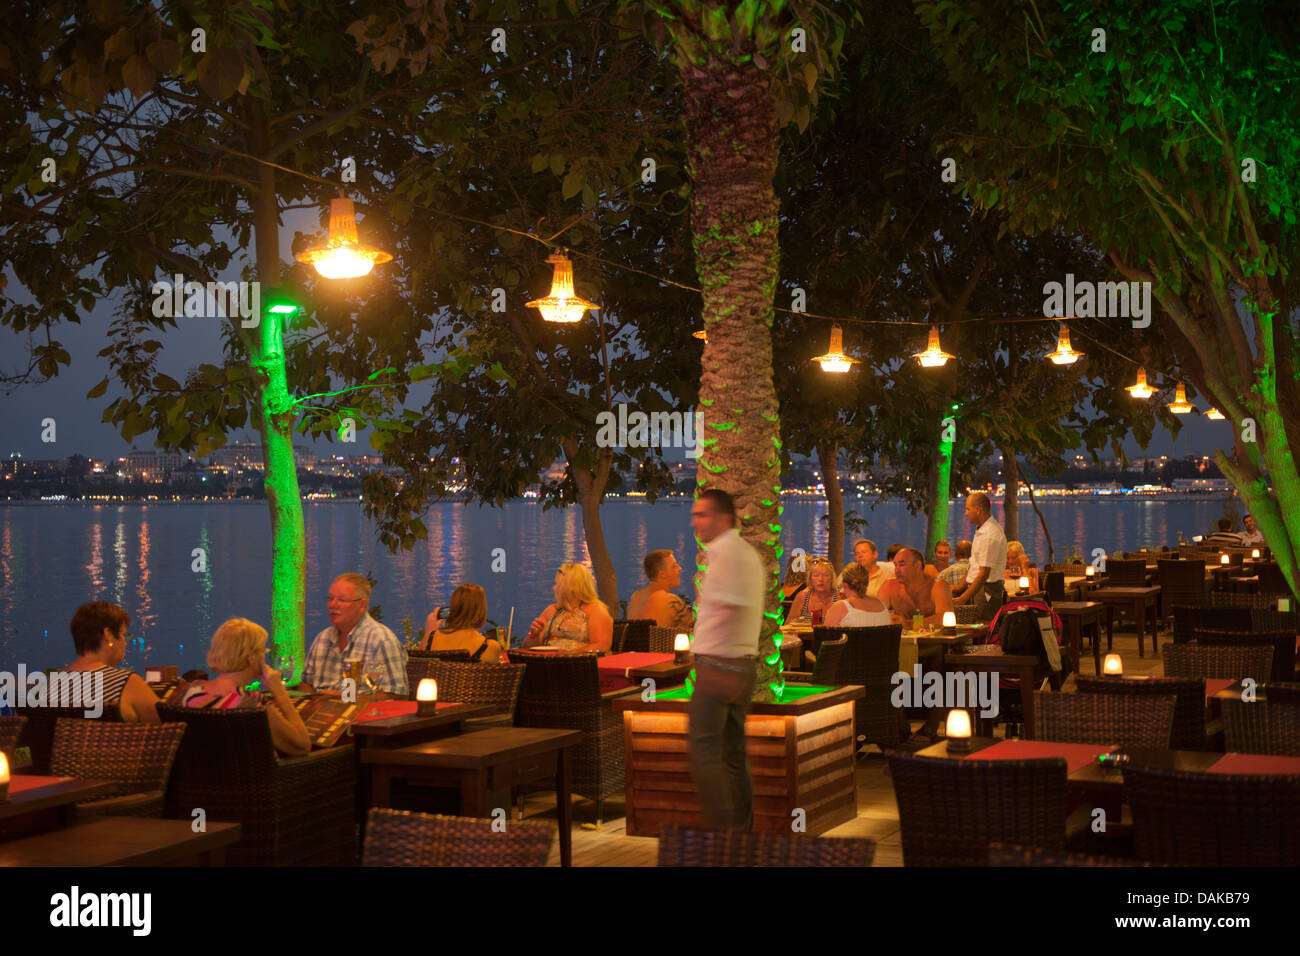 Türkei, Provinz Antalya, Side, Selimiye, Platz am Hafen mit dem Orfoz Restaurant Stock Photo